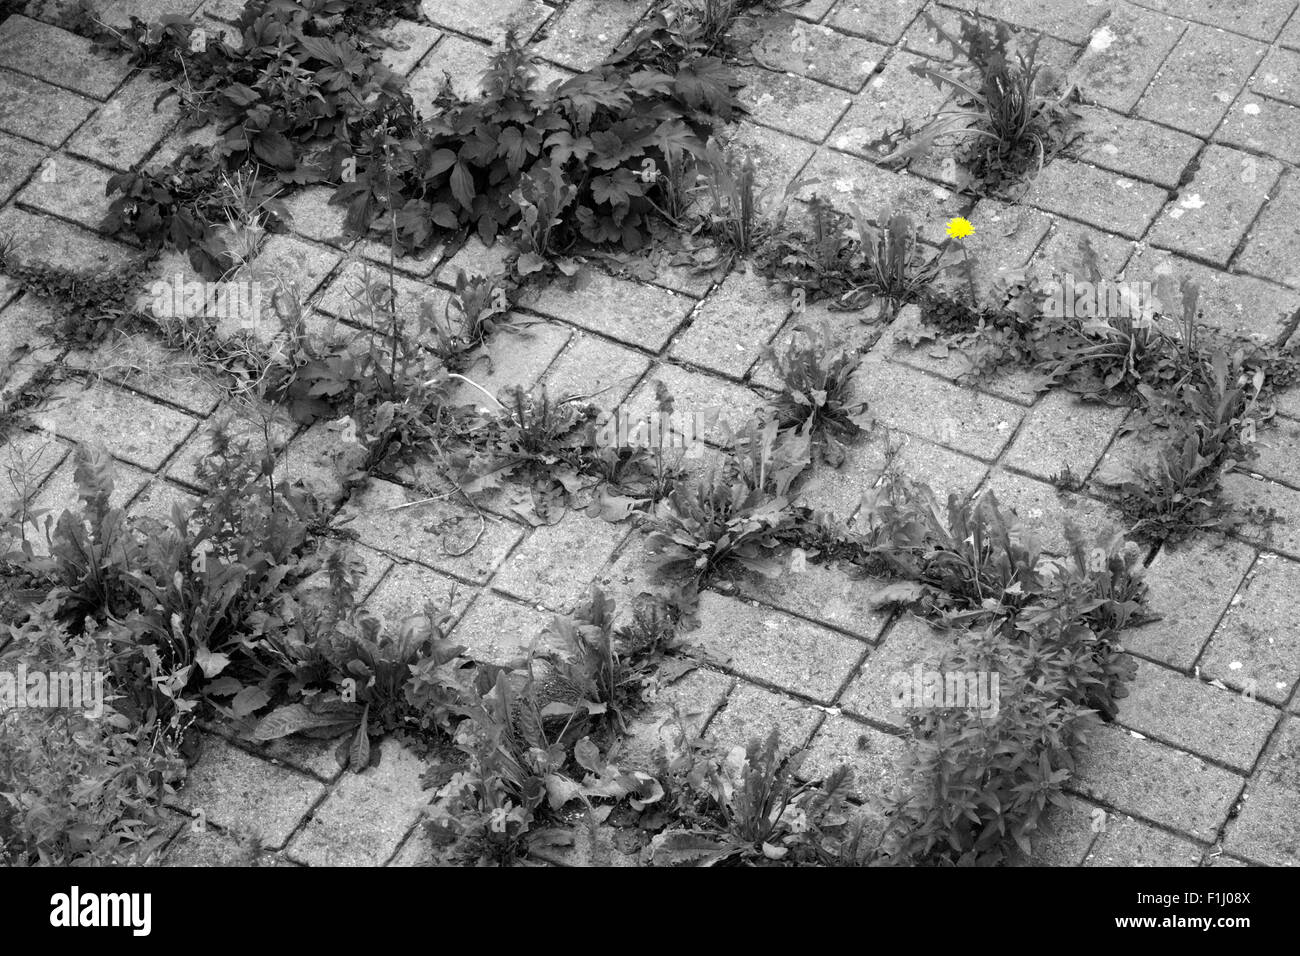 Les mauvaises herbes poussent dans les fissures entre les pavés dans un milieu urbain jardin devant l'angleterre uk Banque D'Images